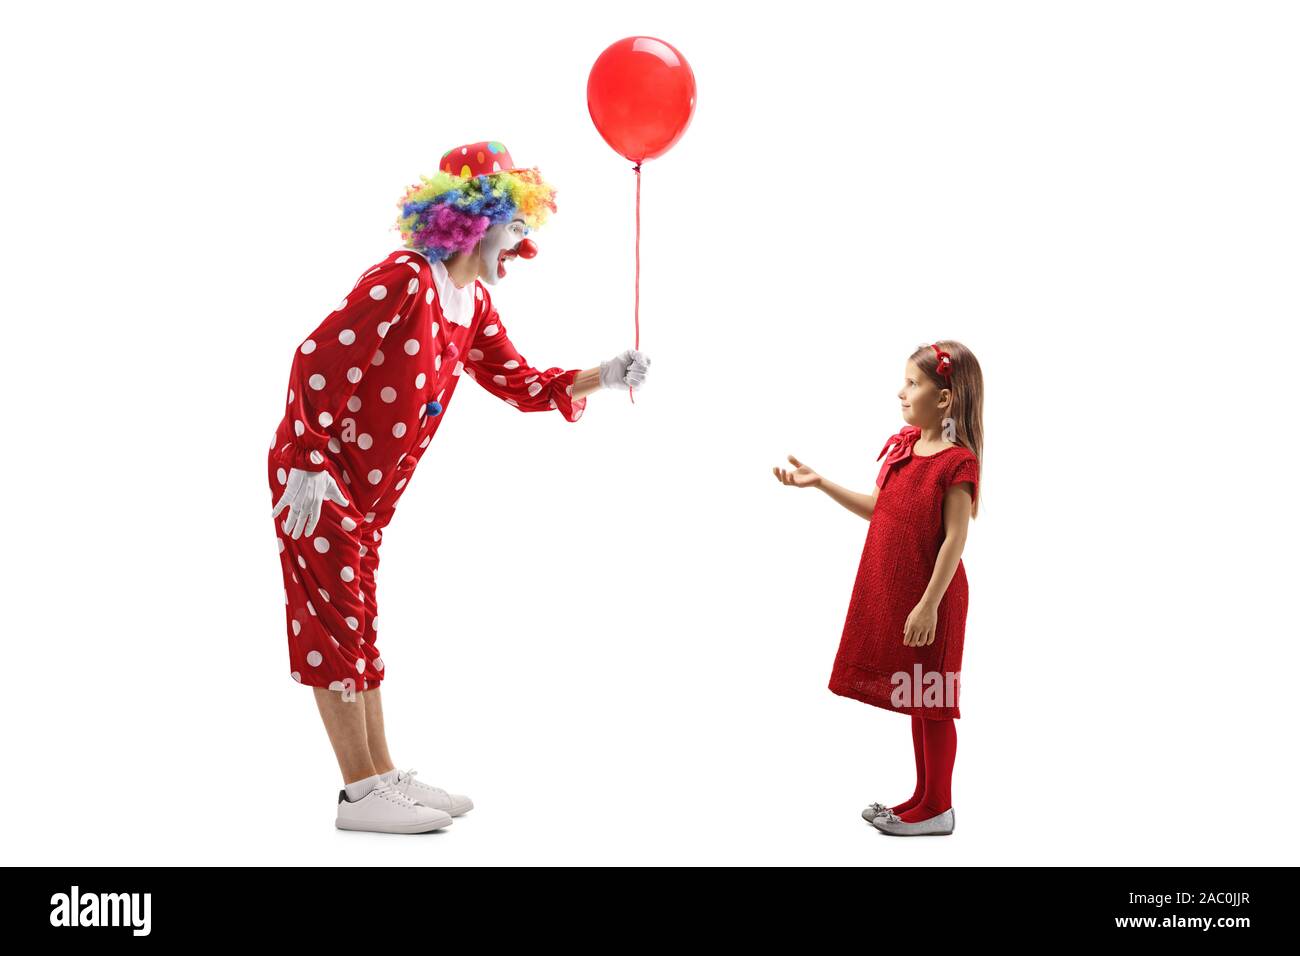 De toute la longueur d'un clown en donnant un ballon rouge pour une petite fille isolée sur fond blanc Banque D'Images